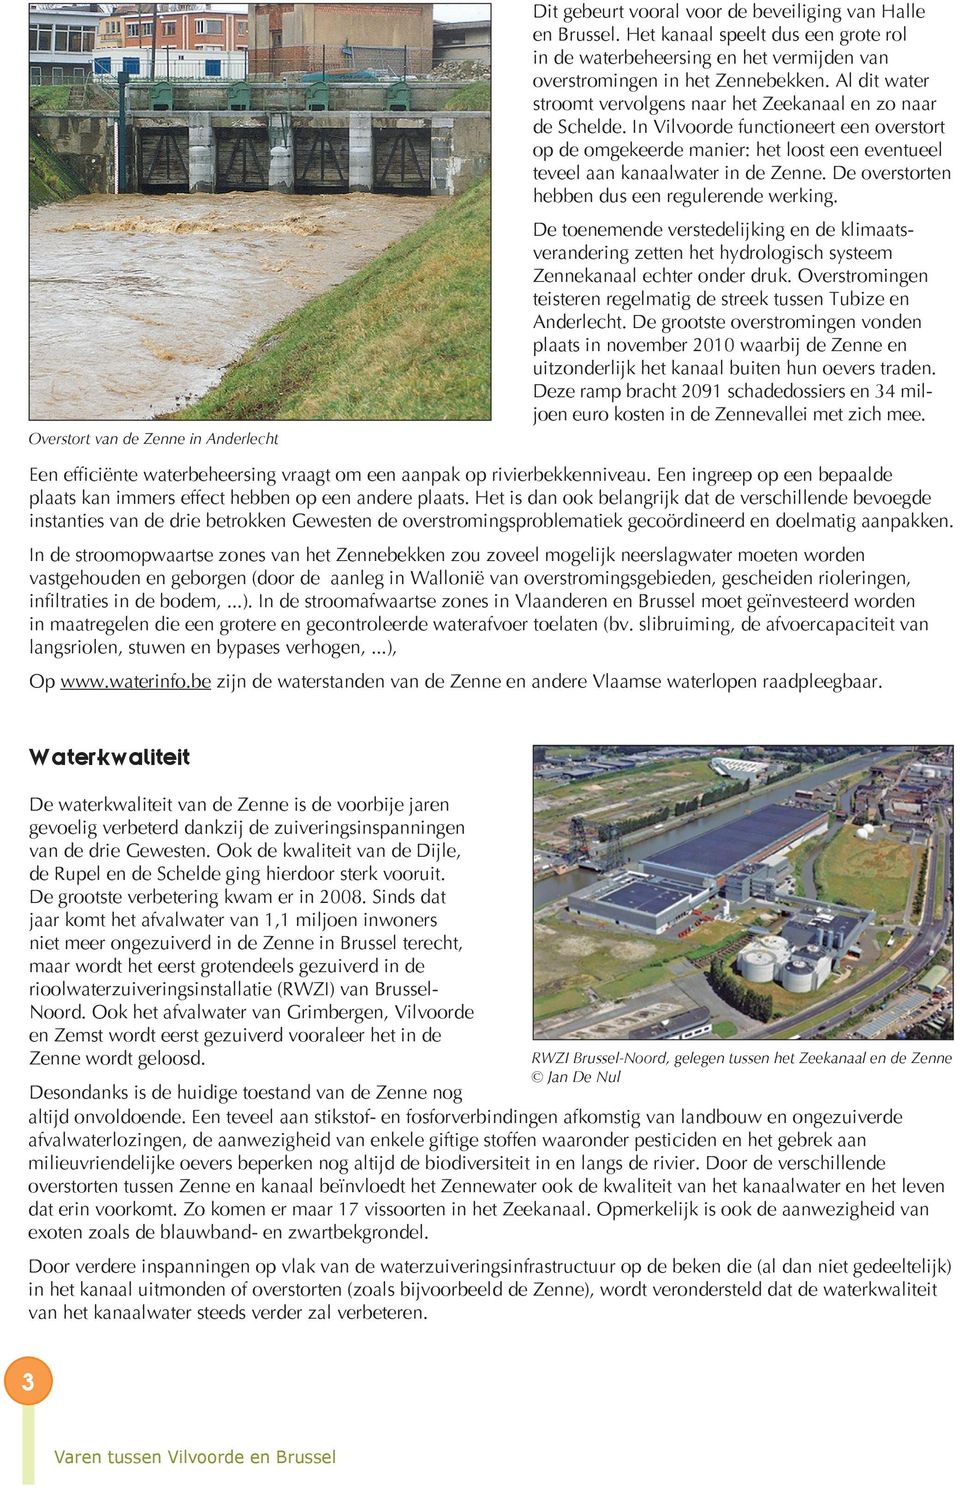 In Vilvoorde functioneert een overstort op de omgekeerde manier: het loost een eventueel teveel aan kanaalwater in de Zenne. De overstorten hebben dus een regulerende werking.